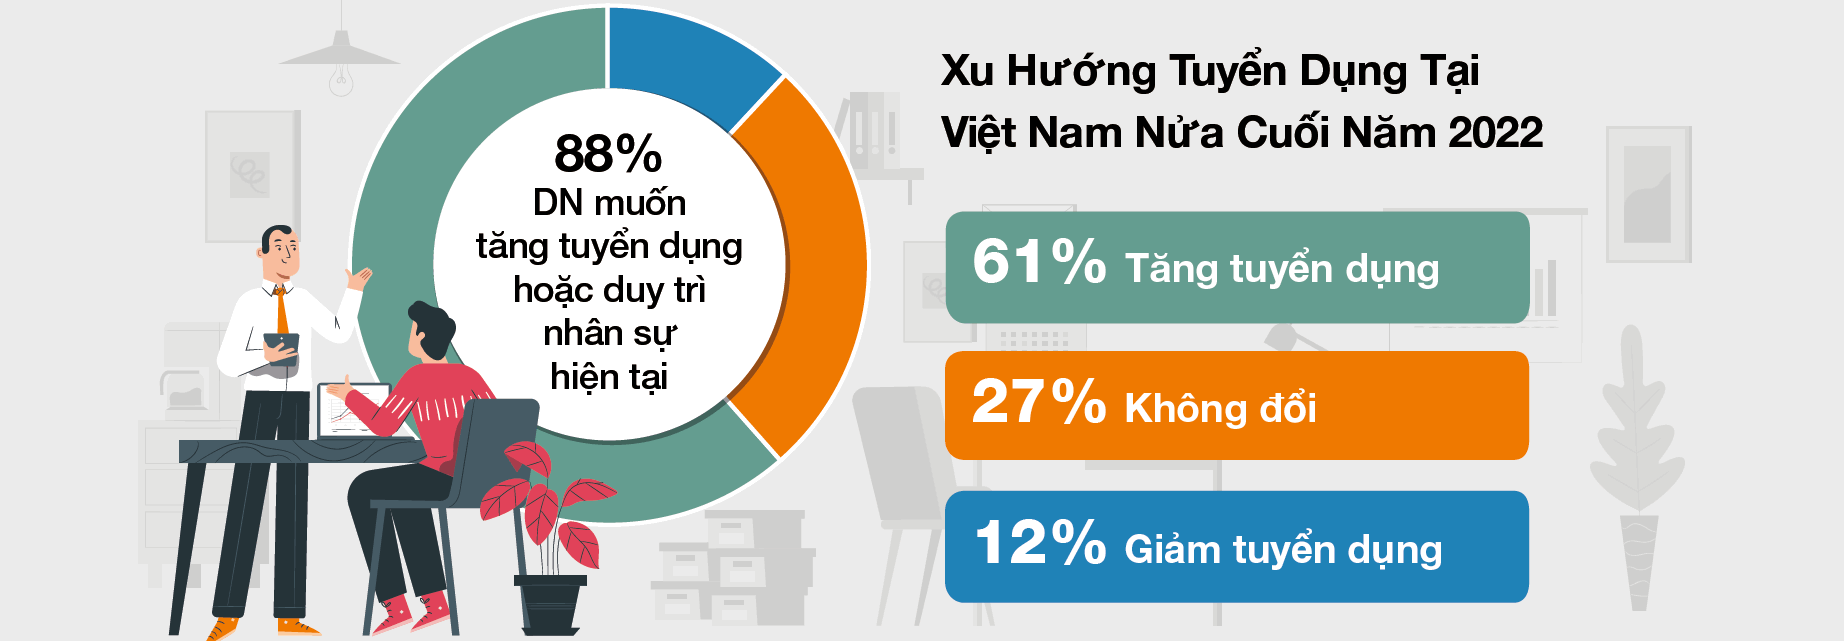 [Infographic] Thị trường lao động Việt Nam nửa cuối năm nhìn từ khảo sát của một tập đoàn tuyển dụng đa quốc gia - Ảnh 2.